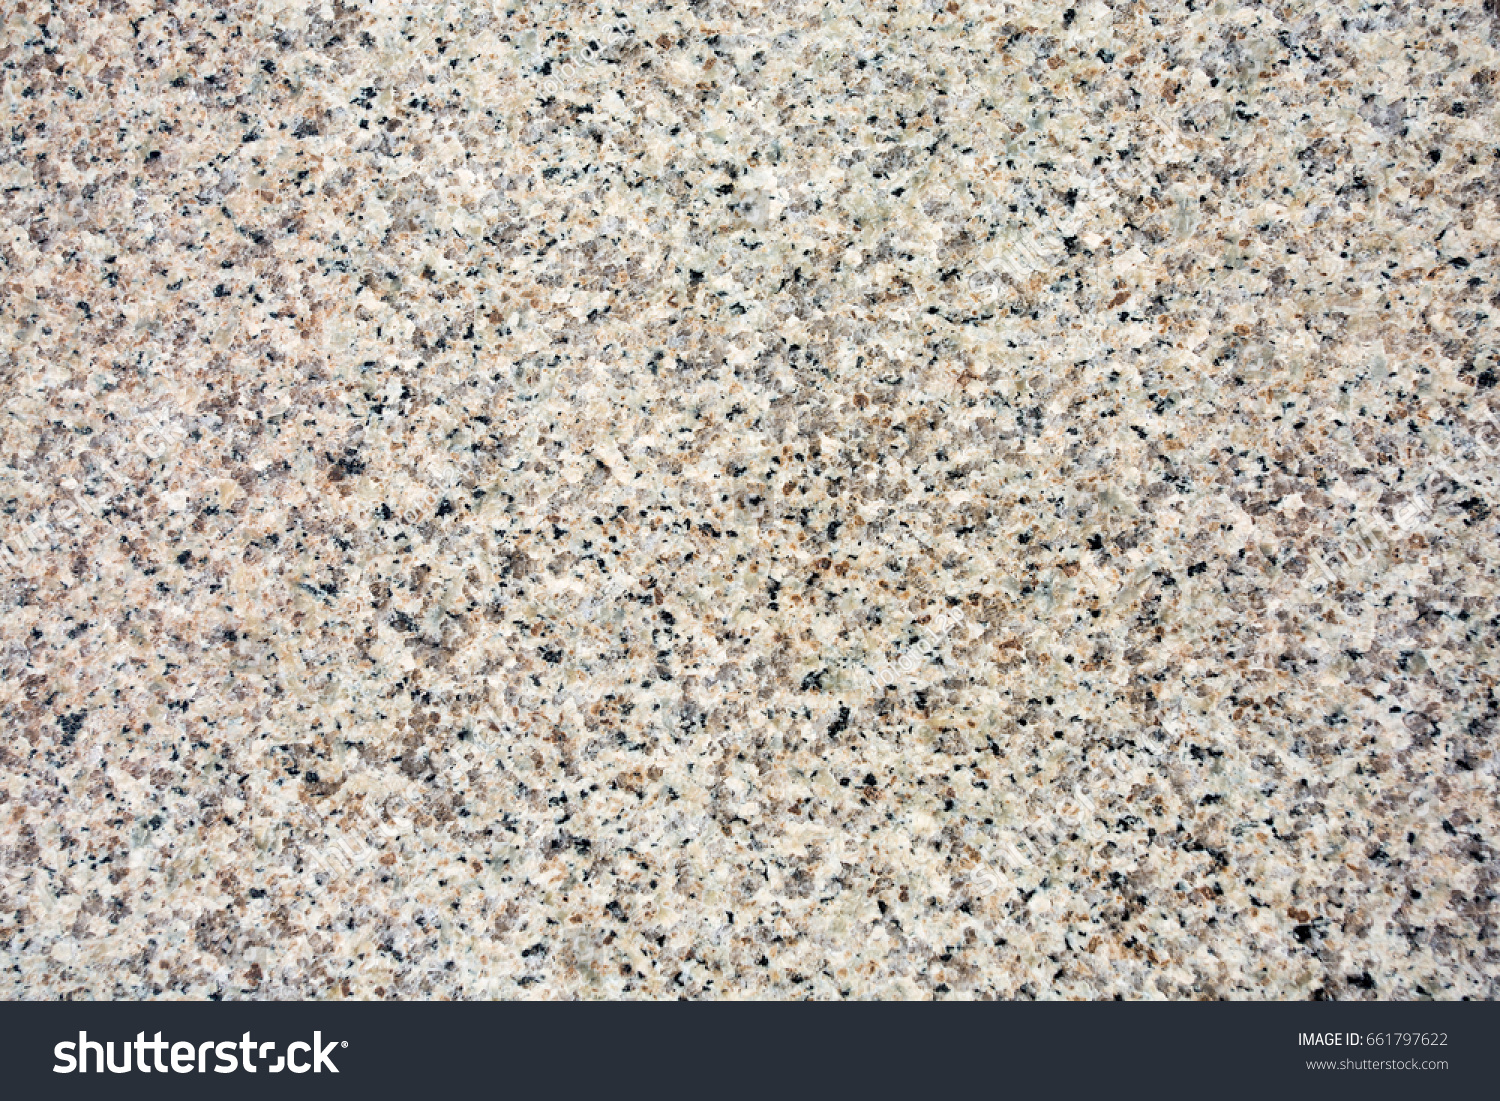 stone floor #661797622